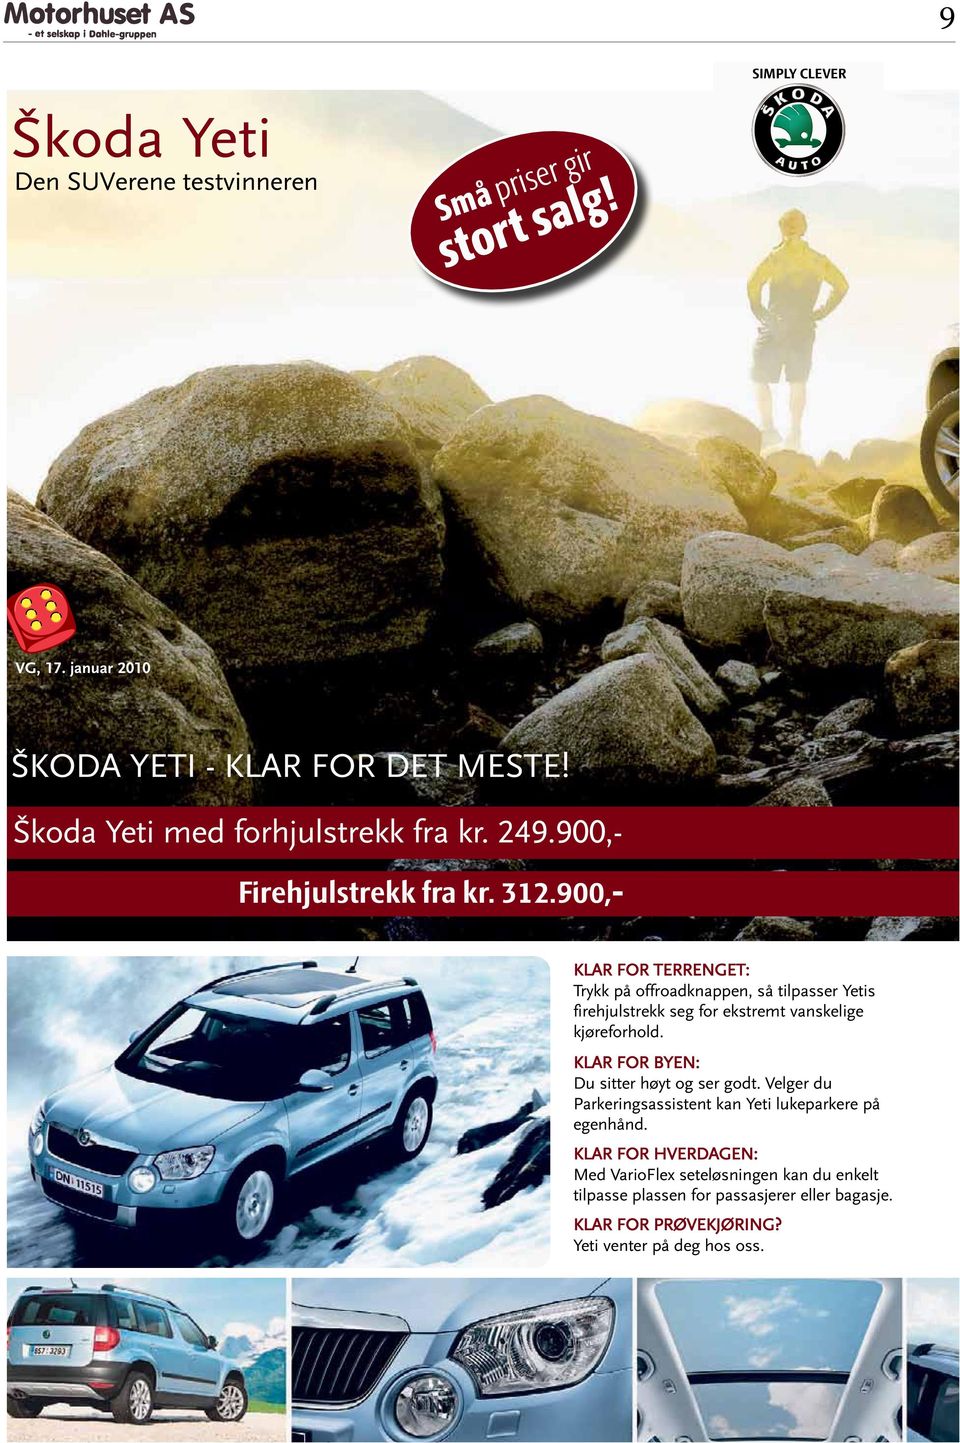 Škoda Yeti med forhjulstrekk fra kr. 249.900,- Firehjulstrekk fra kr. 312.